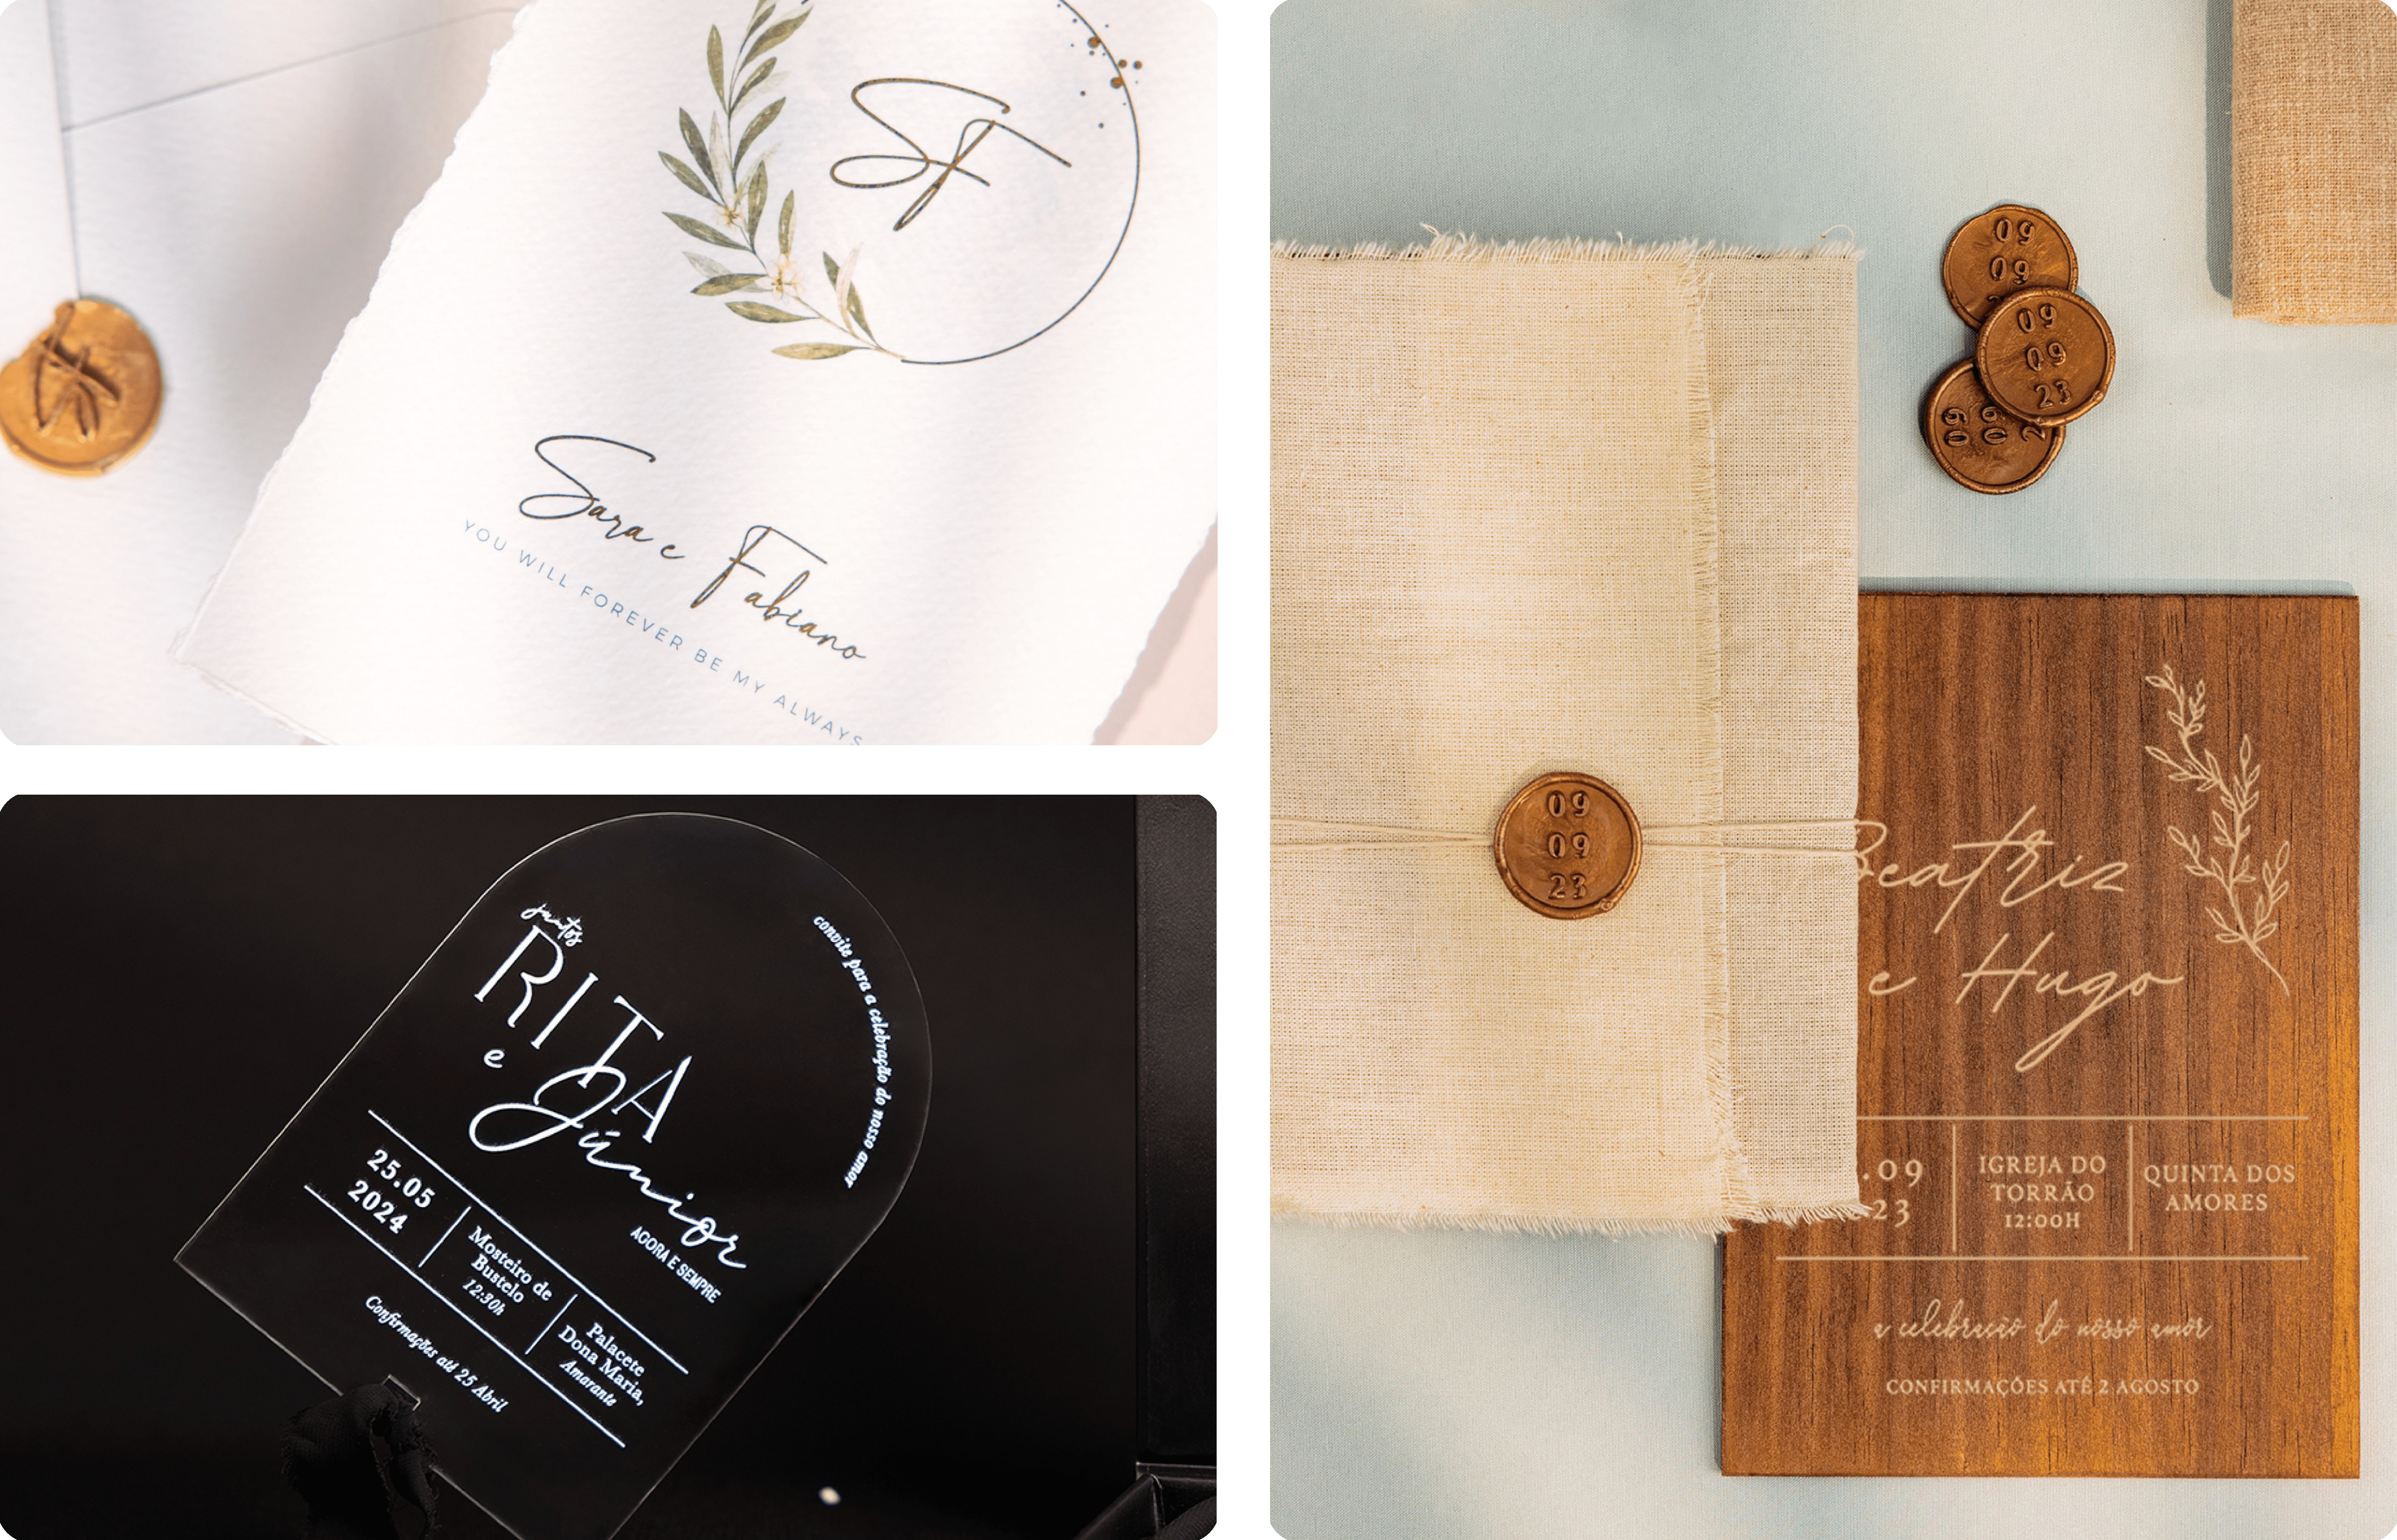 Convites de casamento acrílico, papel algodão com efeito rasgado e convites em madeira forrados com linho com lacre dourado e fio natural